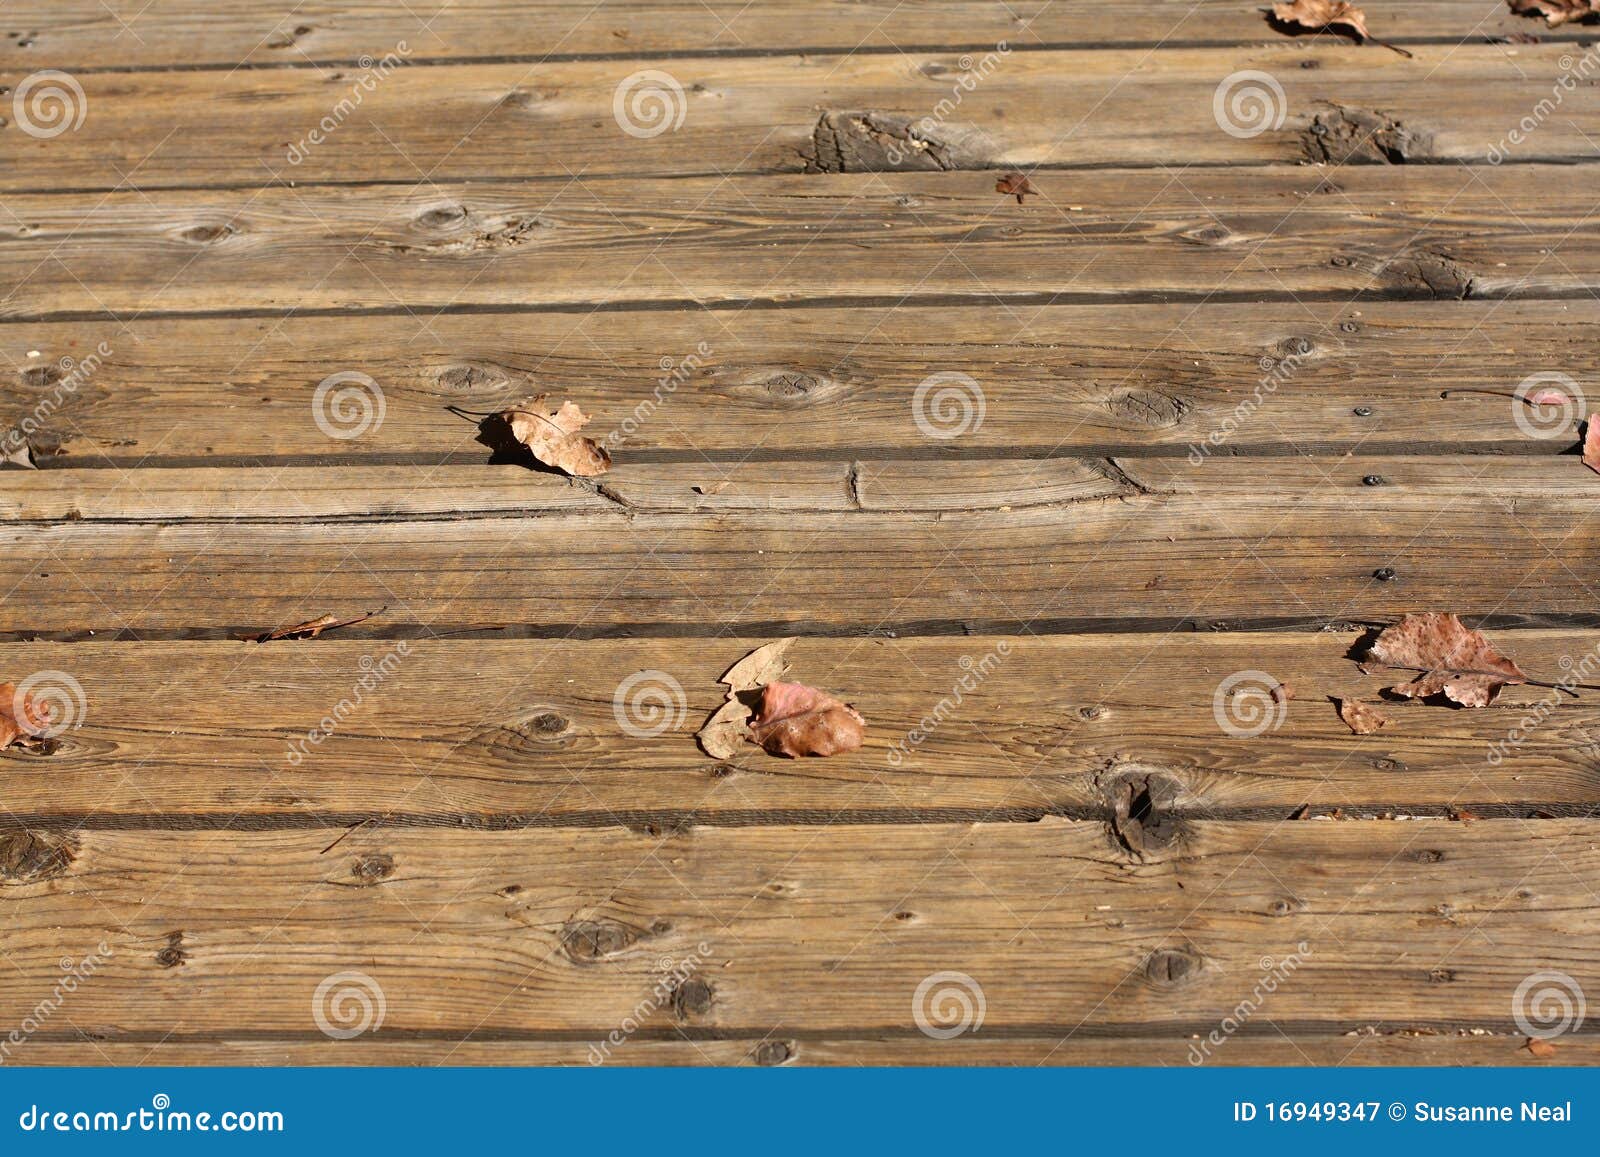 wood slats of an outdoor deck